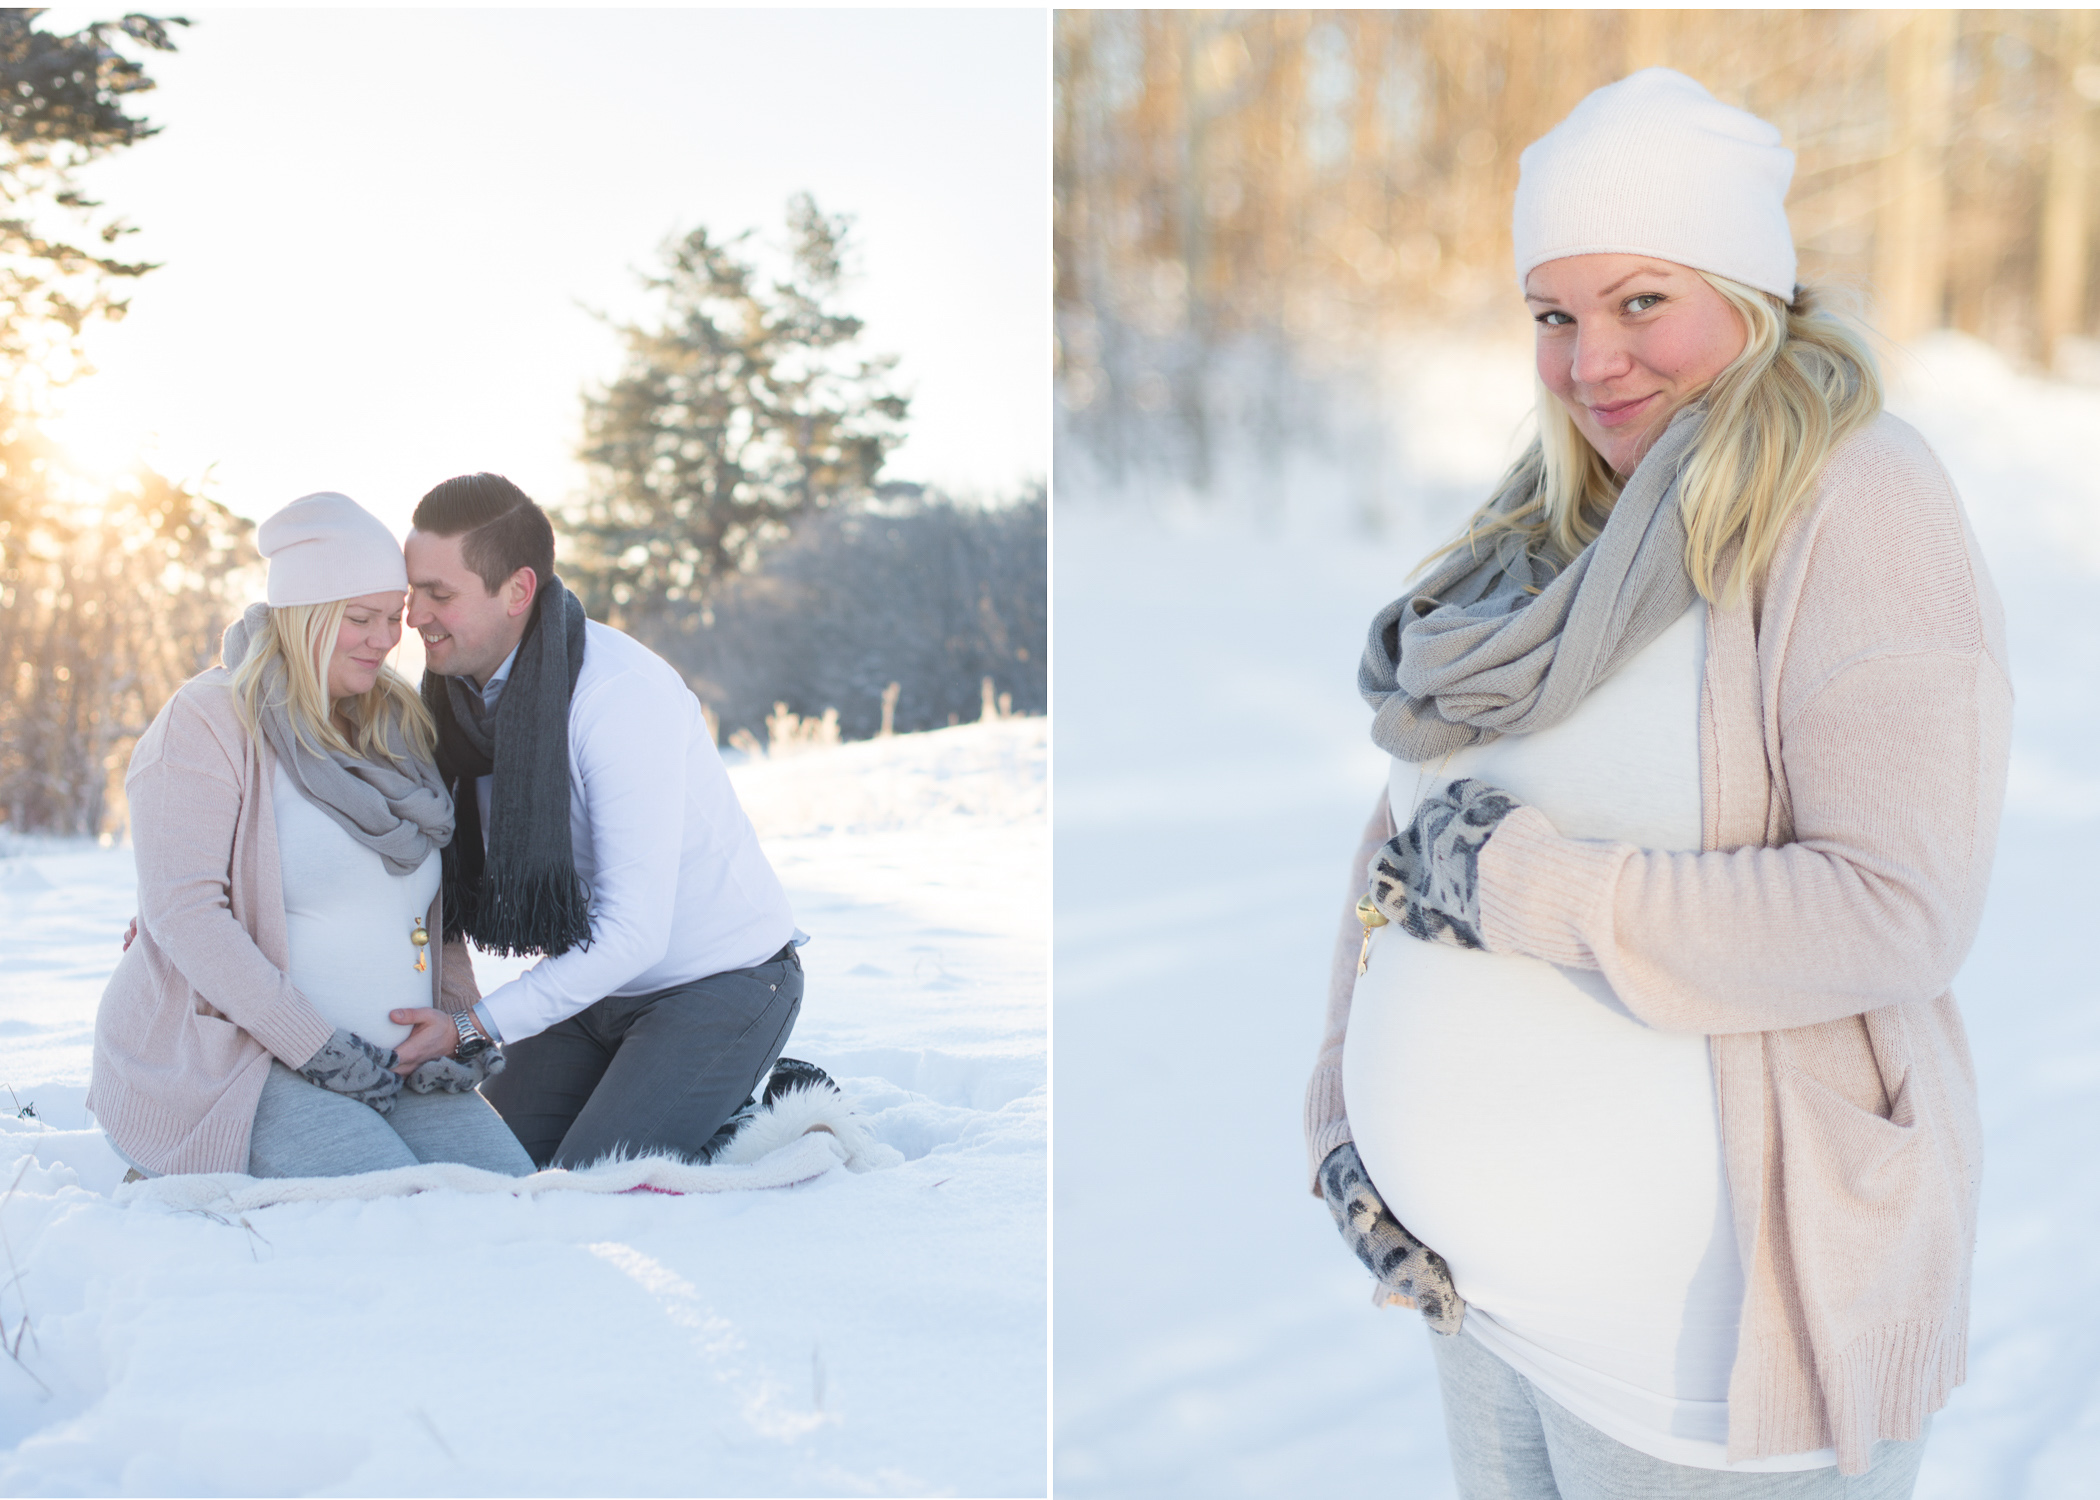 Gravidfotografering i vinterlandskap utomhus Fotostudio Täby, Danderyd, Stockholm